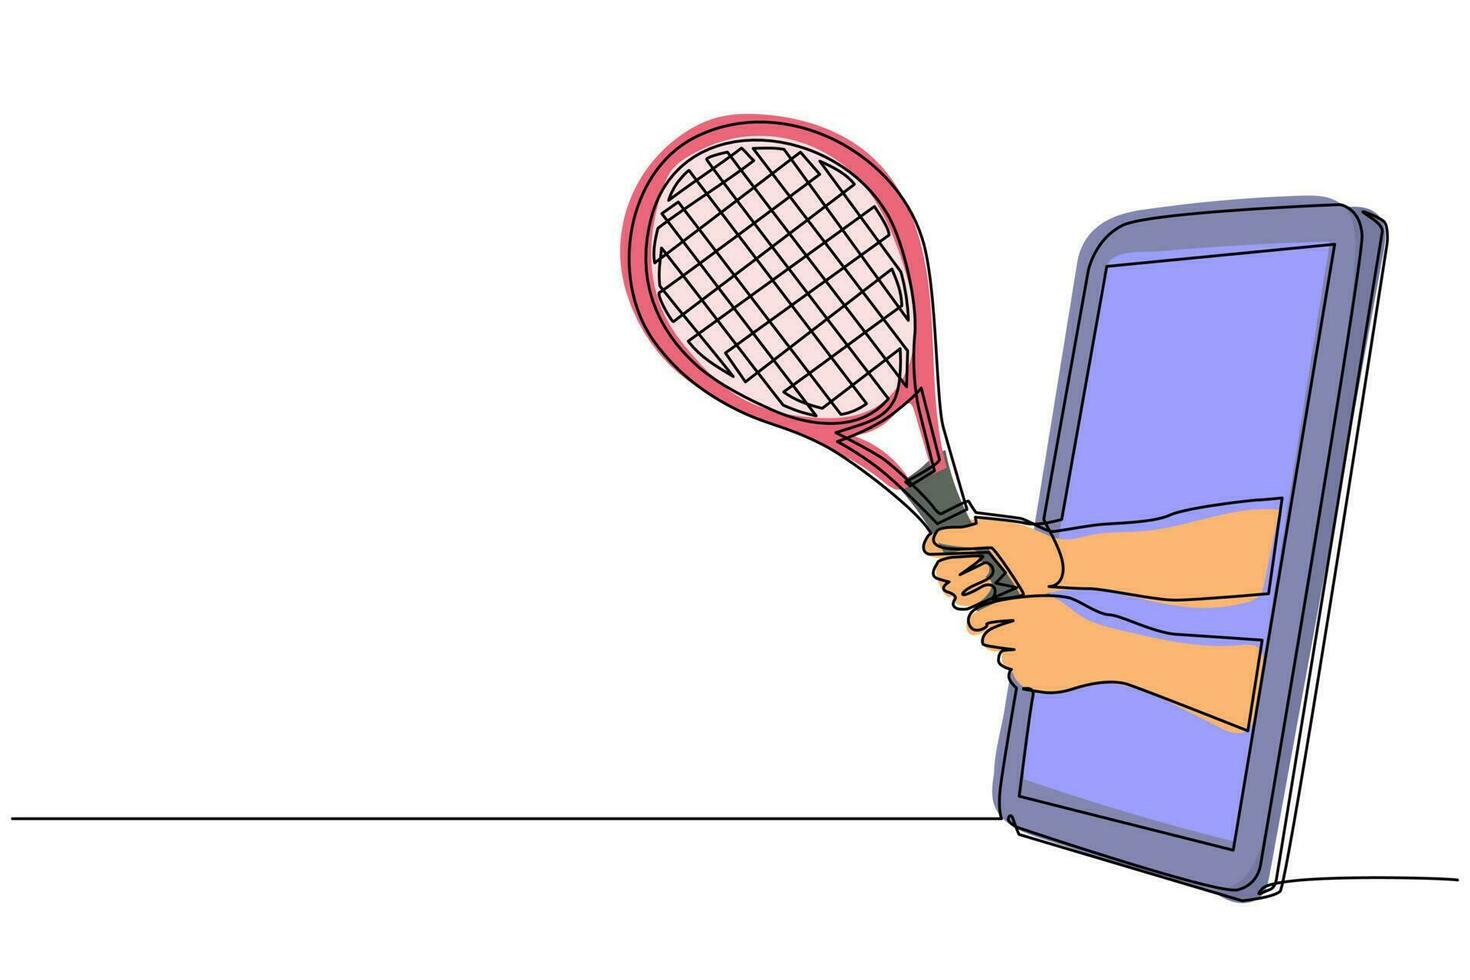 kontinuierliche einzeilige zeichnung spielerhand hält tennisschläger über handy. Smartphone mit Tennisspiele-App